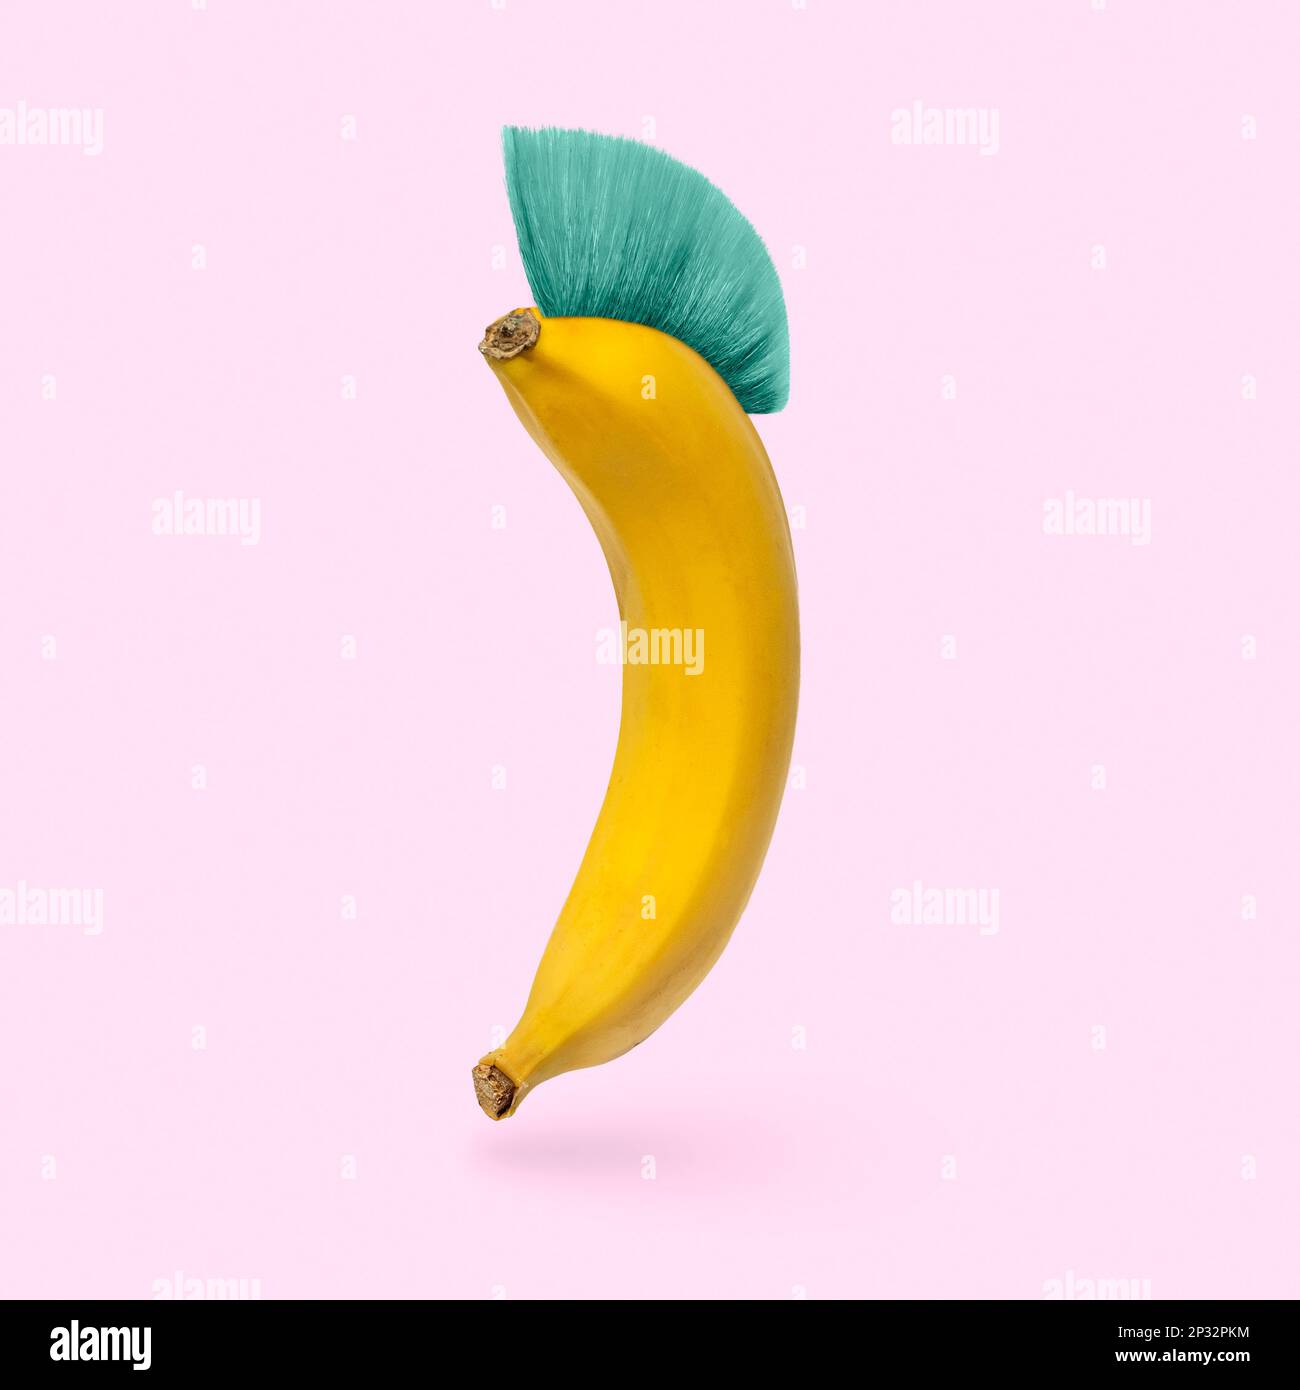 L'umorismo è una banana allegra con un'acconciatura mohawk su uno sfondo rosa. Concetto minimo di umorismo e surreale. Foto di alta qualità Foto Stock